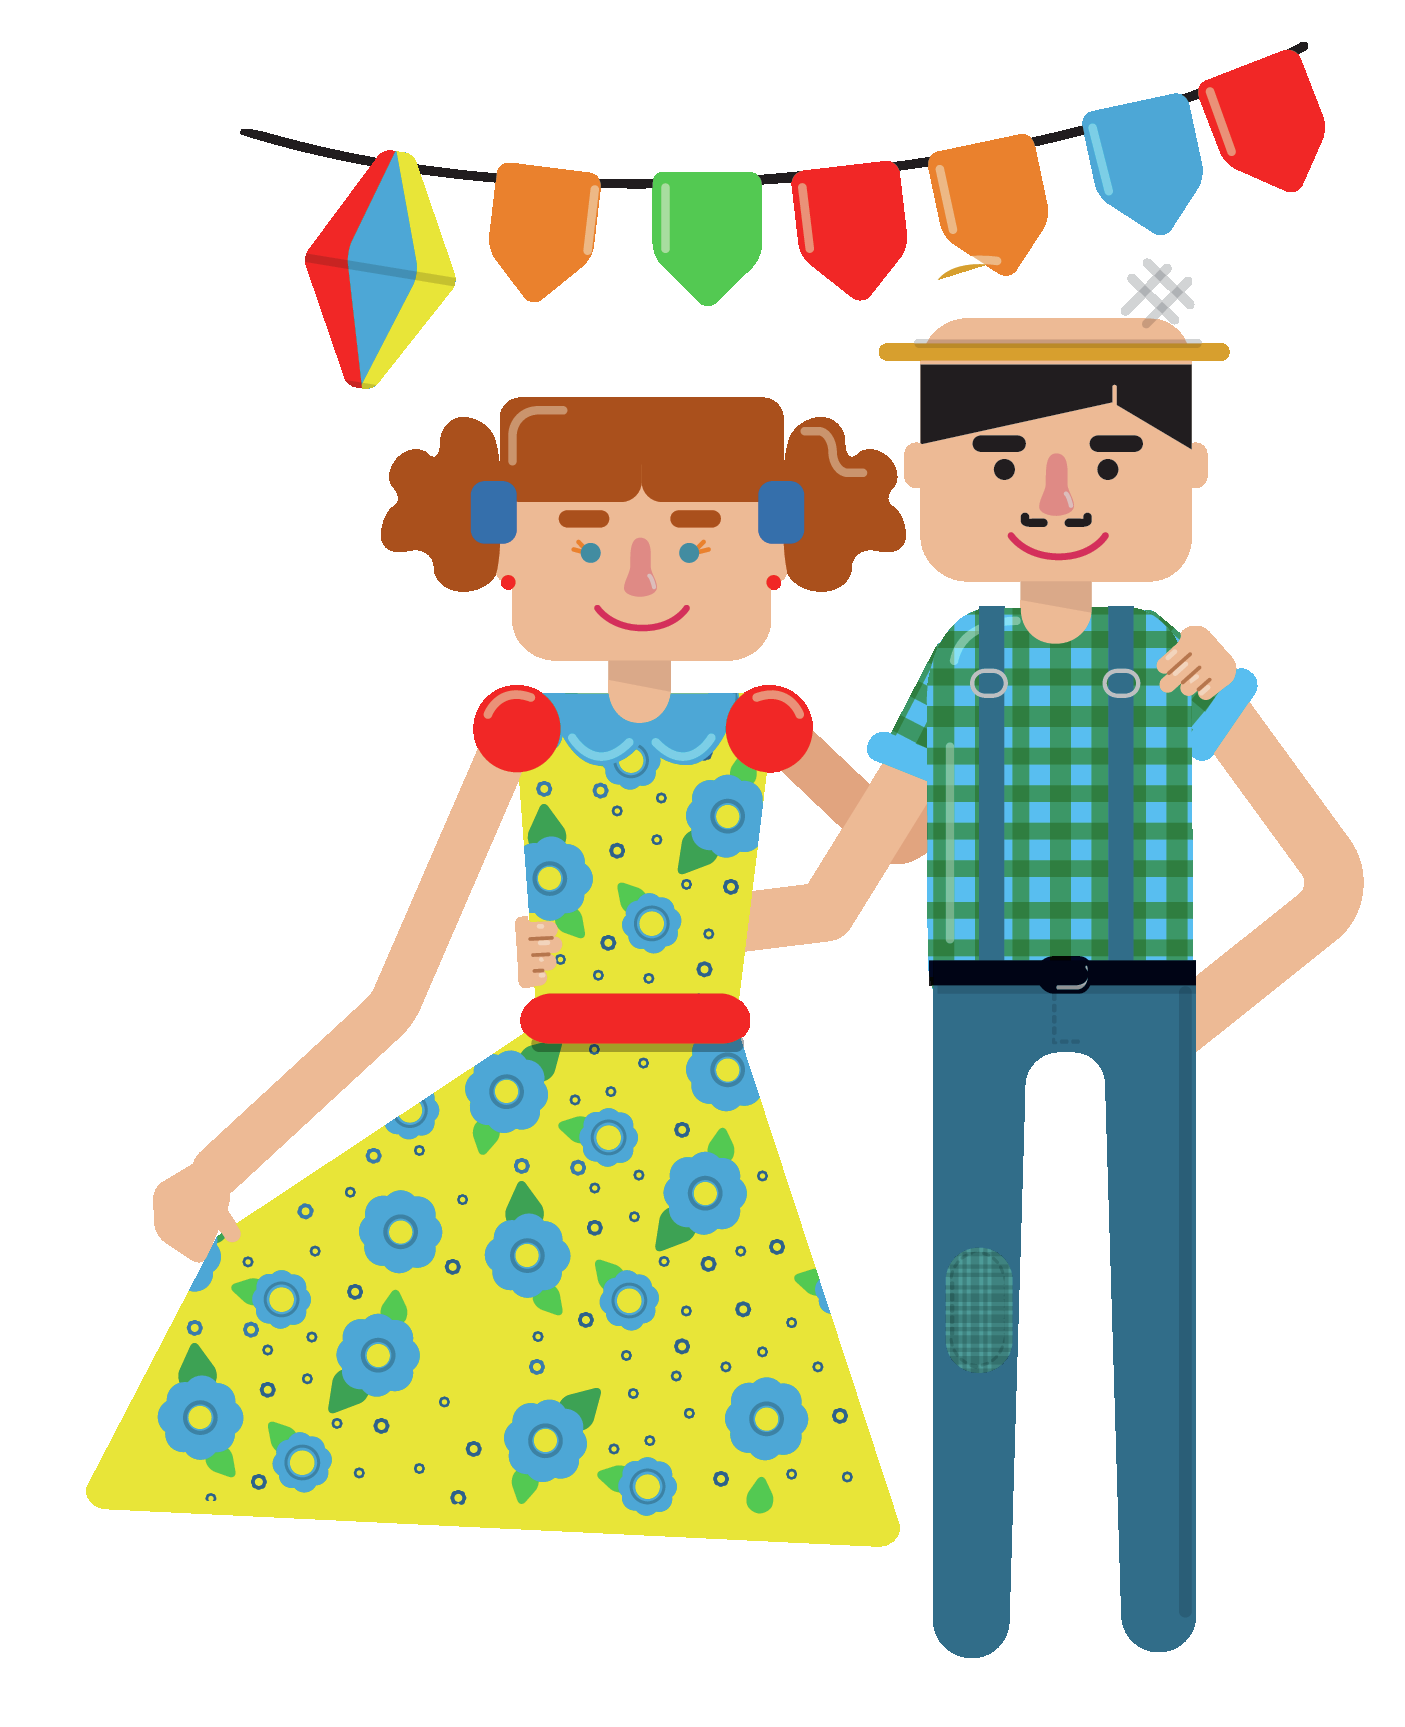 Ilustração. Um homem e uma mulher de braços dados sorrindo. Ela usa vestido florido e ele usa chapéu, camisa xadrez e calça jeans. Acima deles há bandeirinha coloridas e um balão.